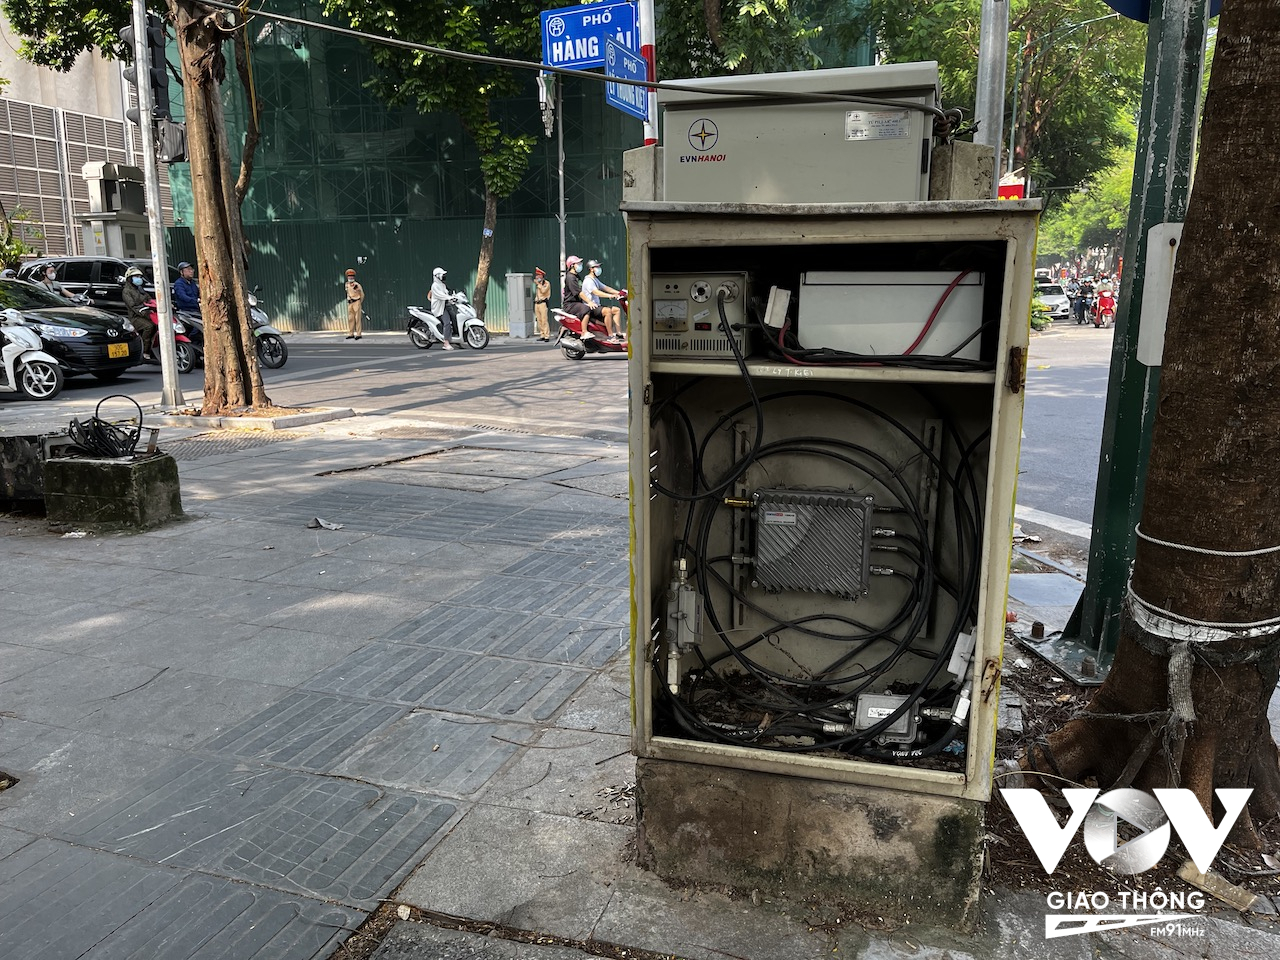 Một trạm điện trên phố Hàng Bài bị mất cửa lộ dây điện và các bộ phận bên trong, rất nguy hiểm nếu trẻ nhỏ nghịch ngợm chạm phải nhưng không được thay thế, sửa chữa hay có bất kỳ cảnh báo nào